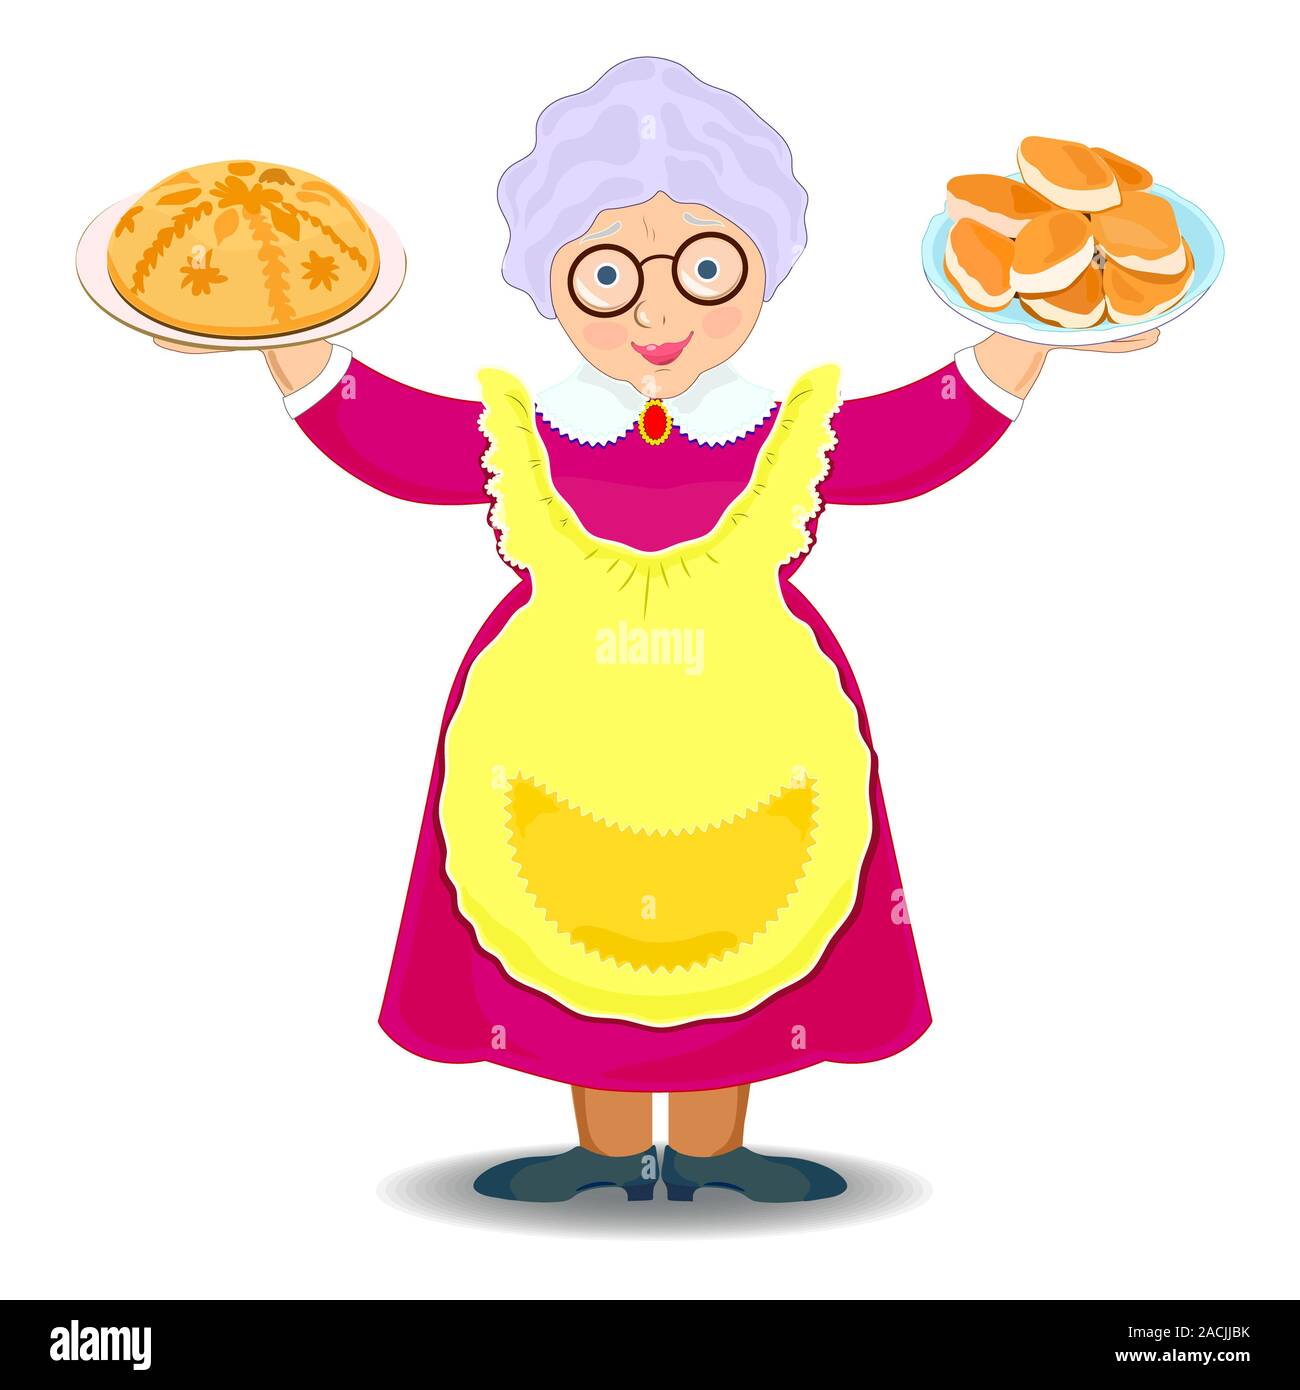 Бабуля с пирожками